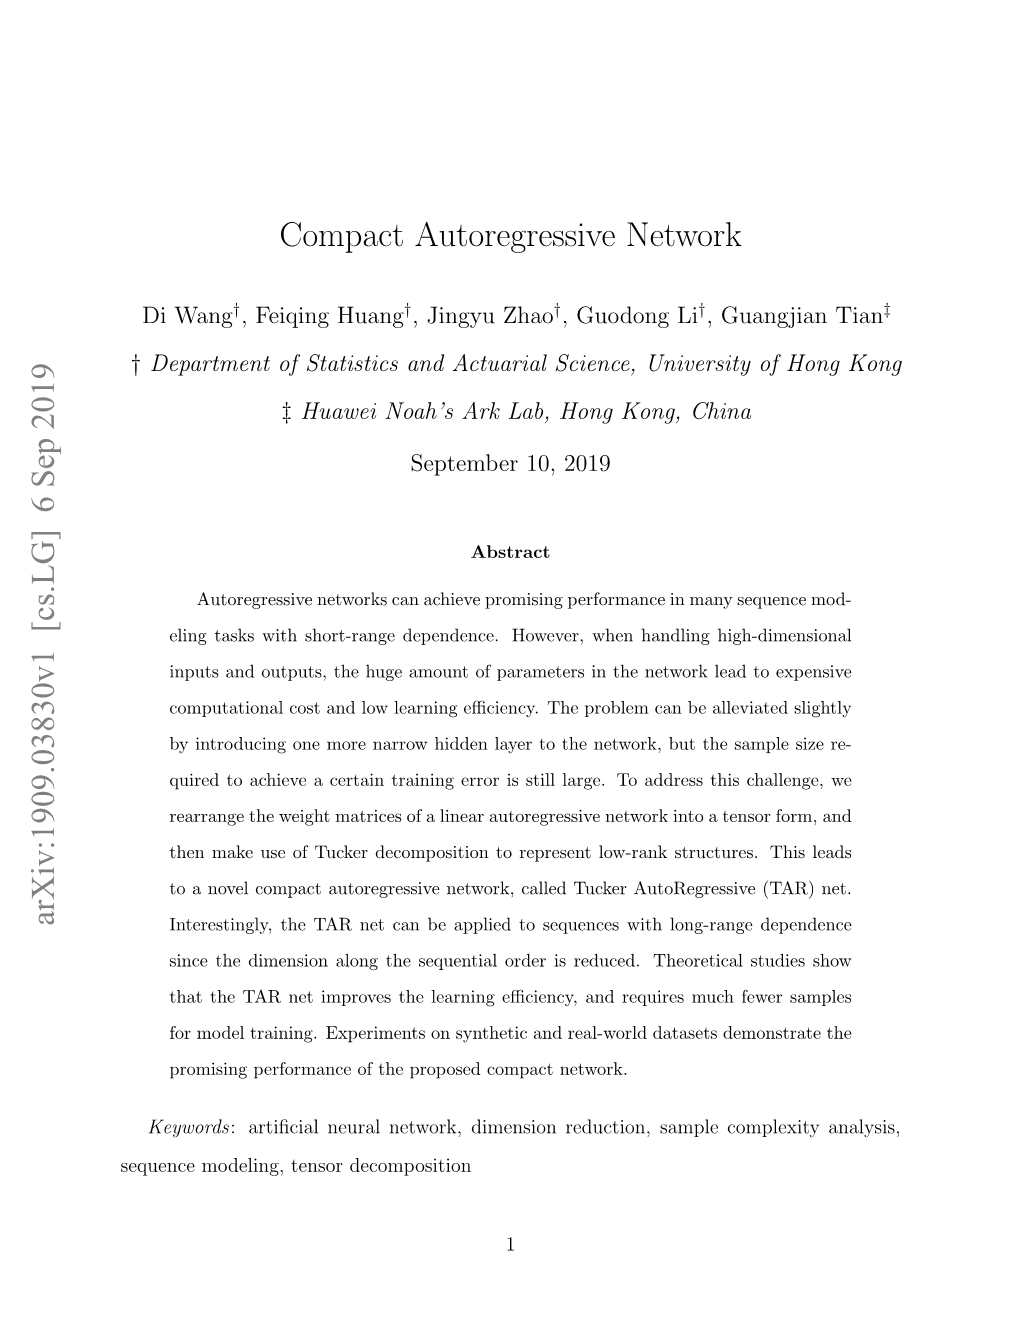 Compact Autoregressive Network Arxiv:1909.03830V1 [Cs.LG] 6 Sep 2019